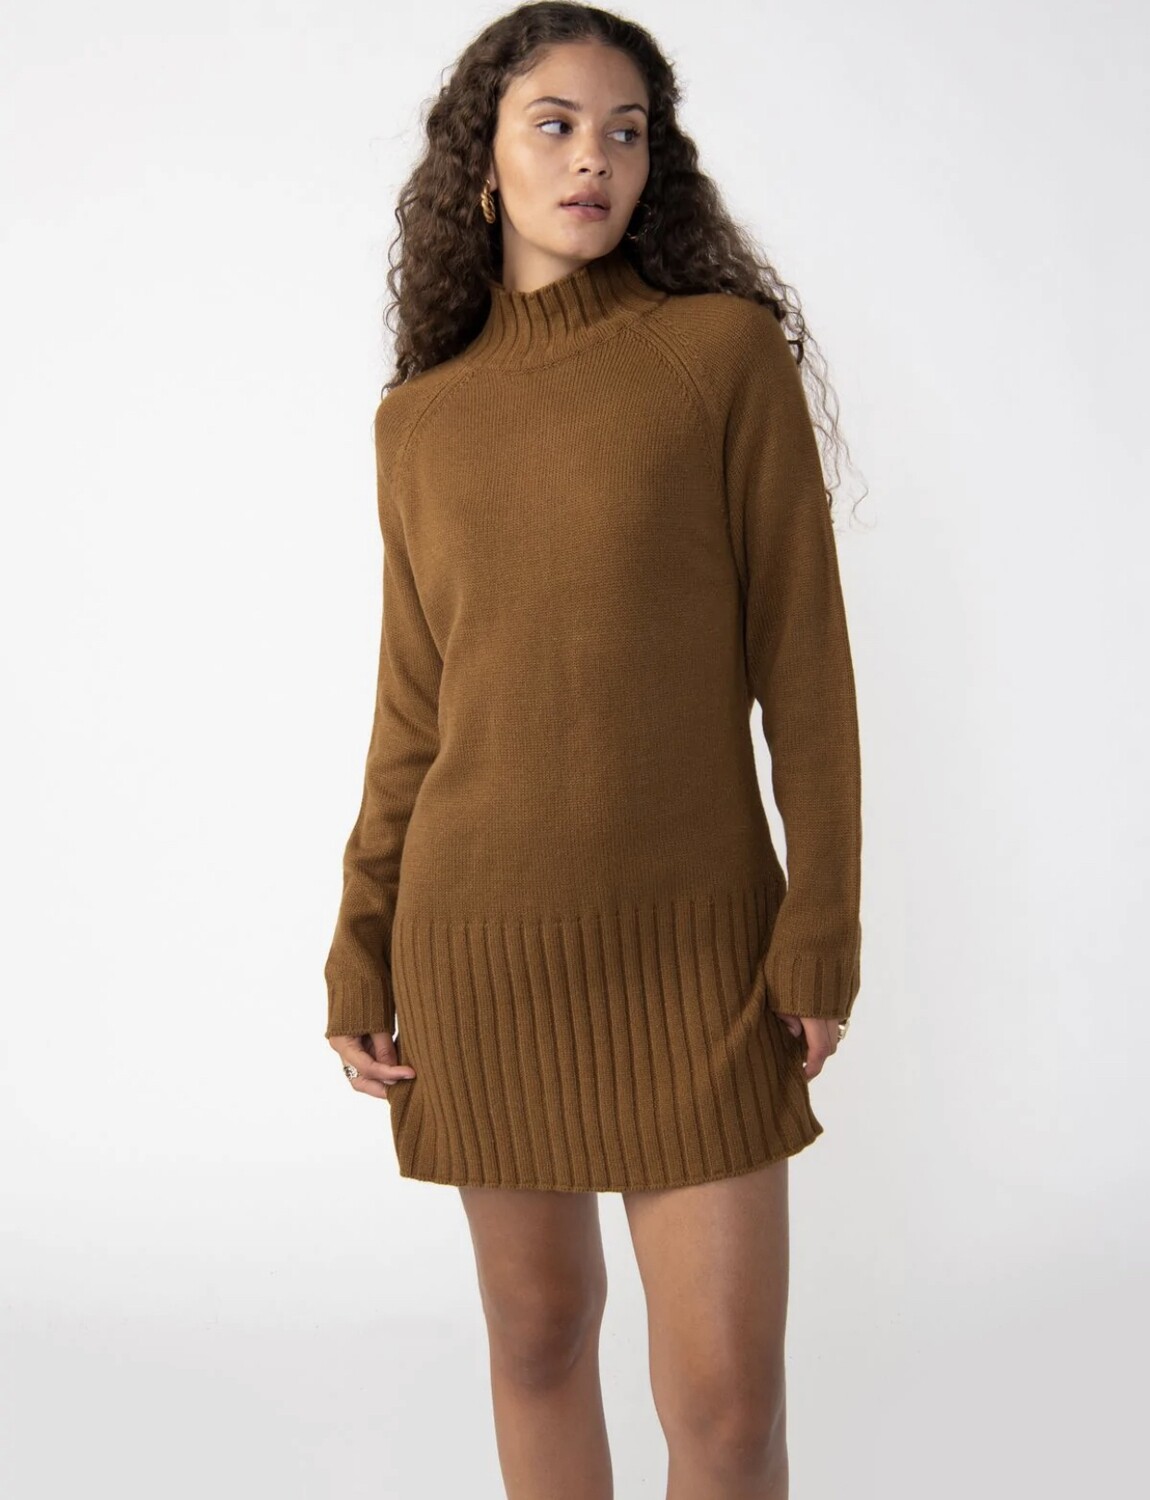 Sanctuary - The Sweater Mini Dress